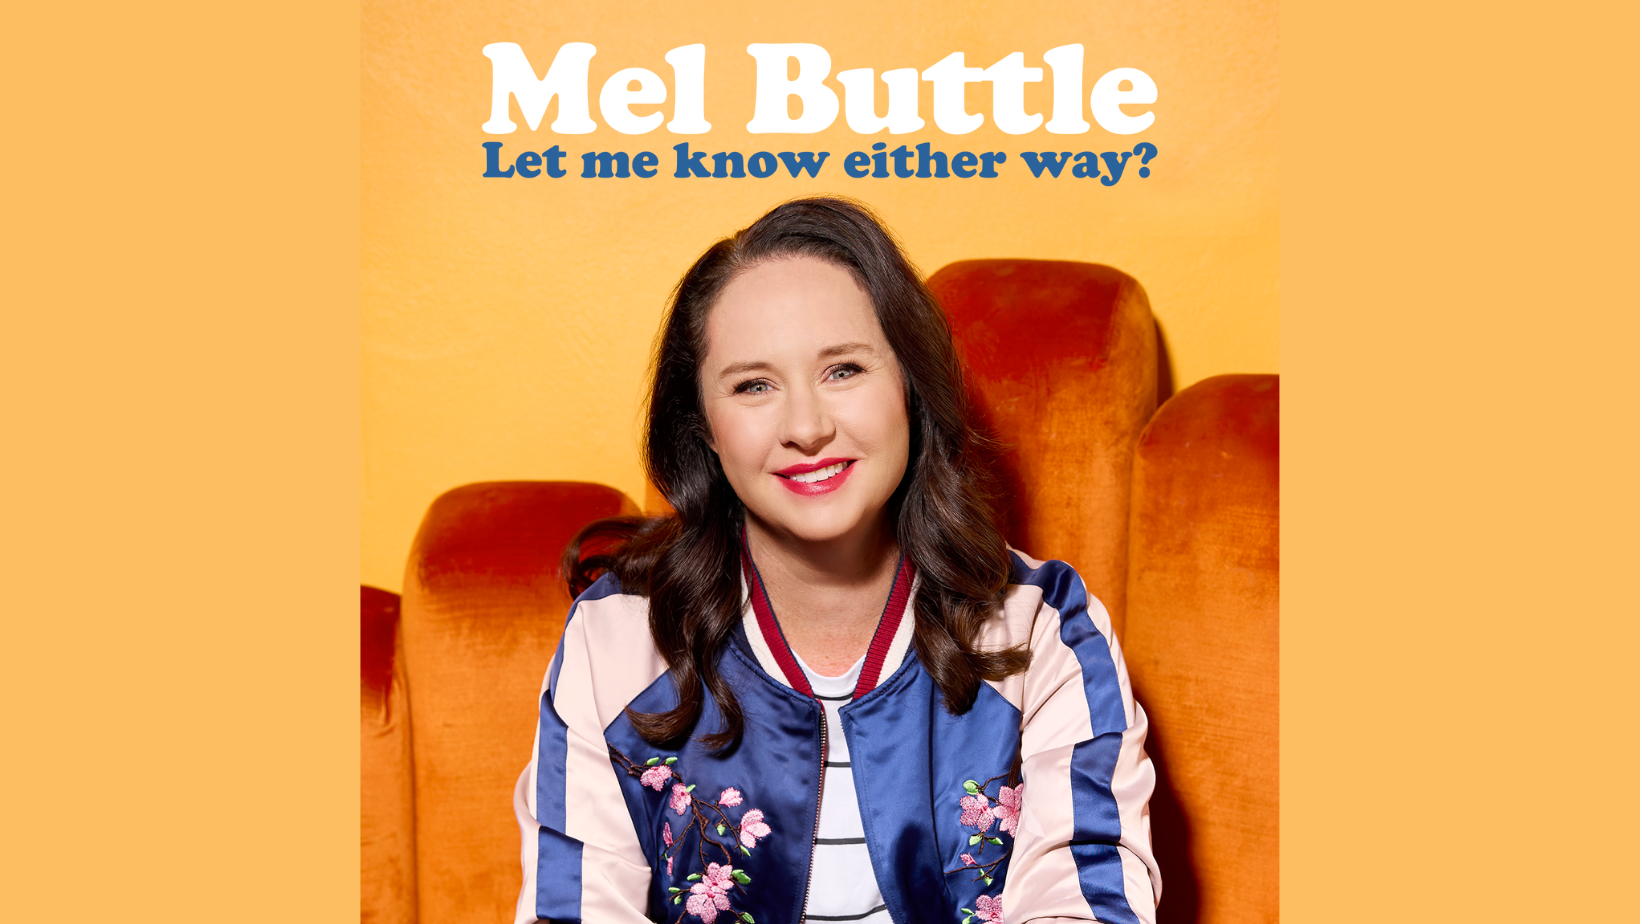 Image of Mel Buttle sitting on orange velvet chair